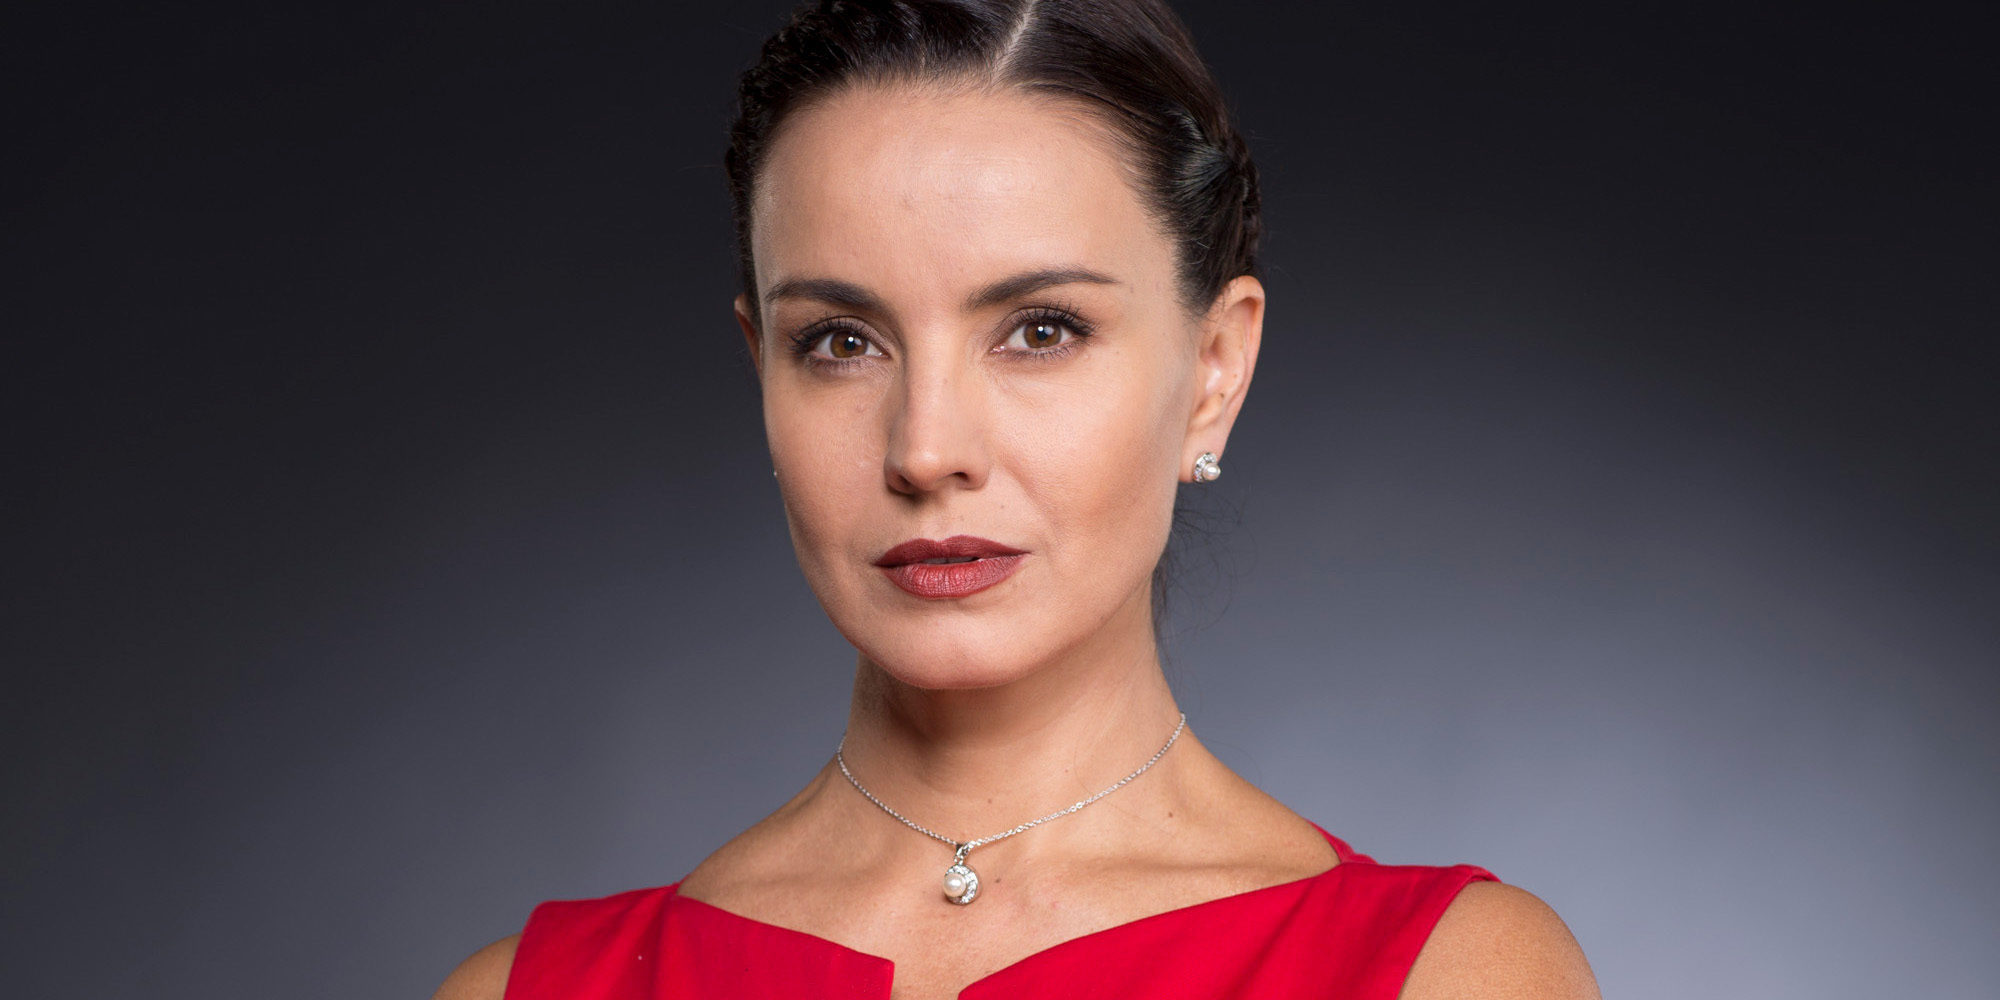 Los 5 papeles en telenovelas más importantes de Alejandra Barros